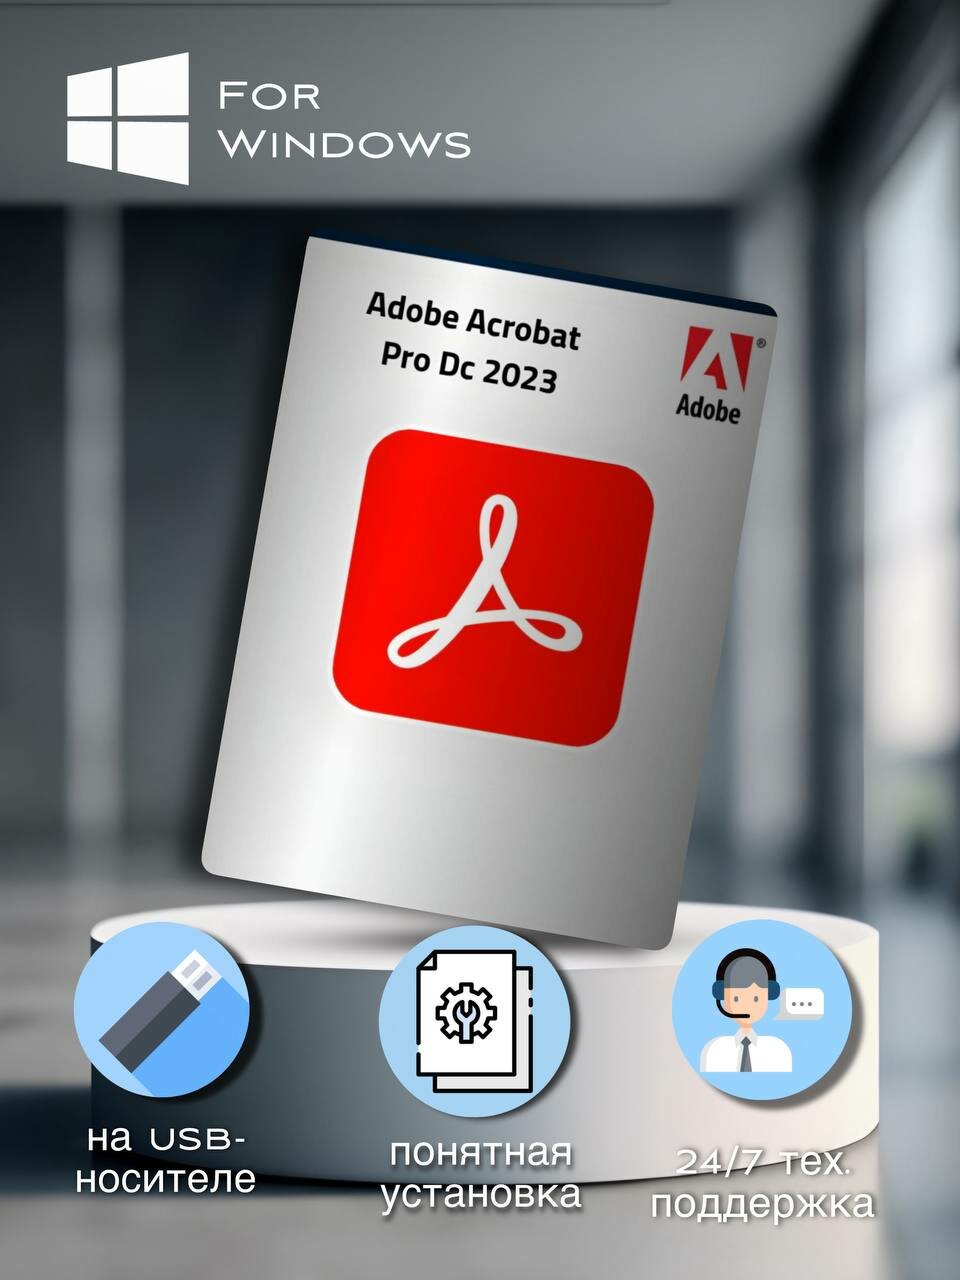 Adobe Acrobat Pro DC 2023 - профессиональный редактор PDF файлов для Windows